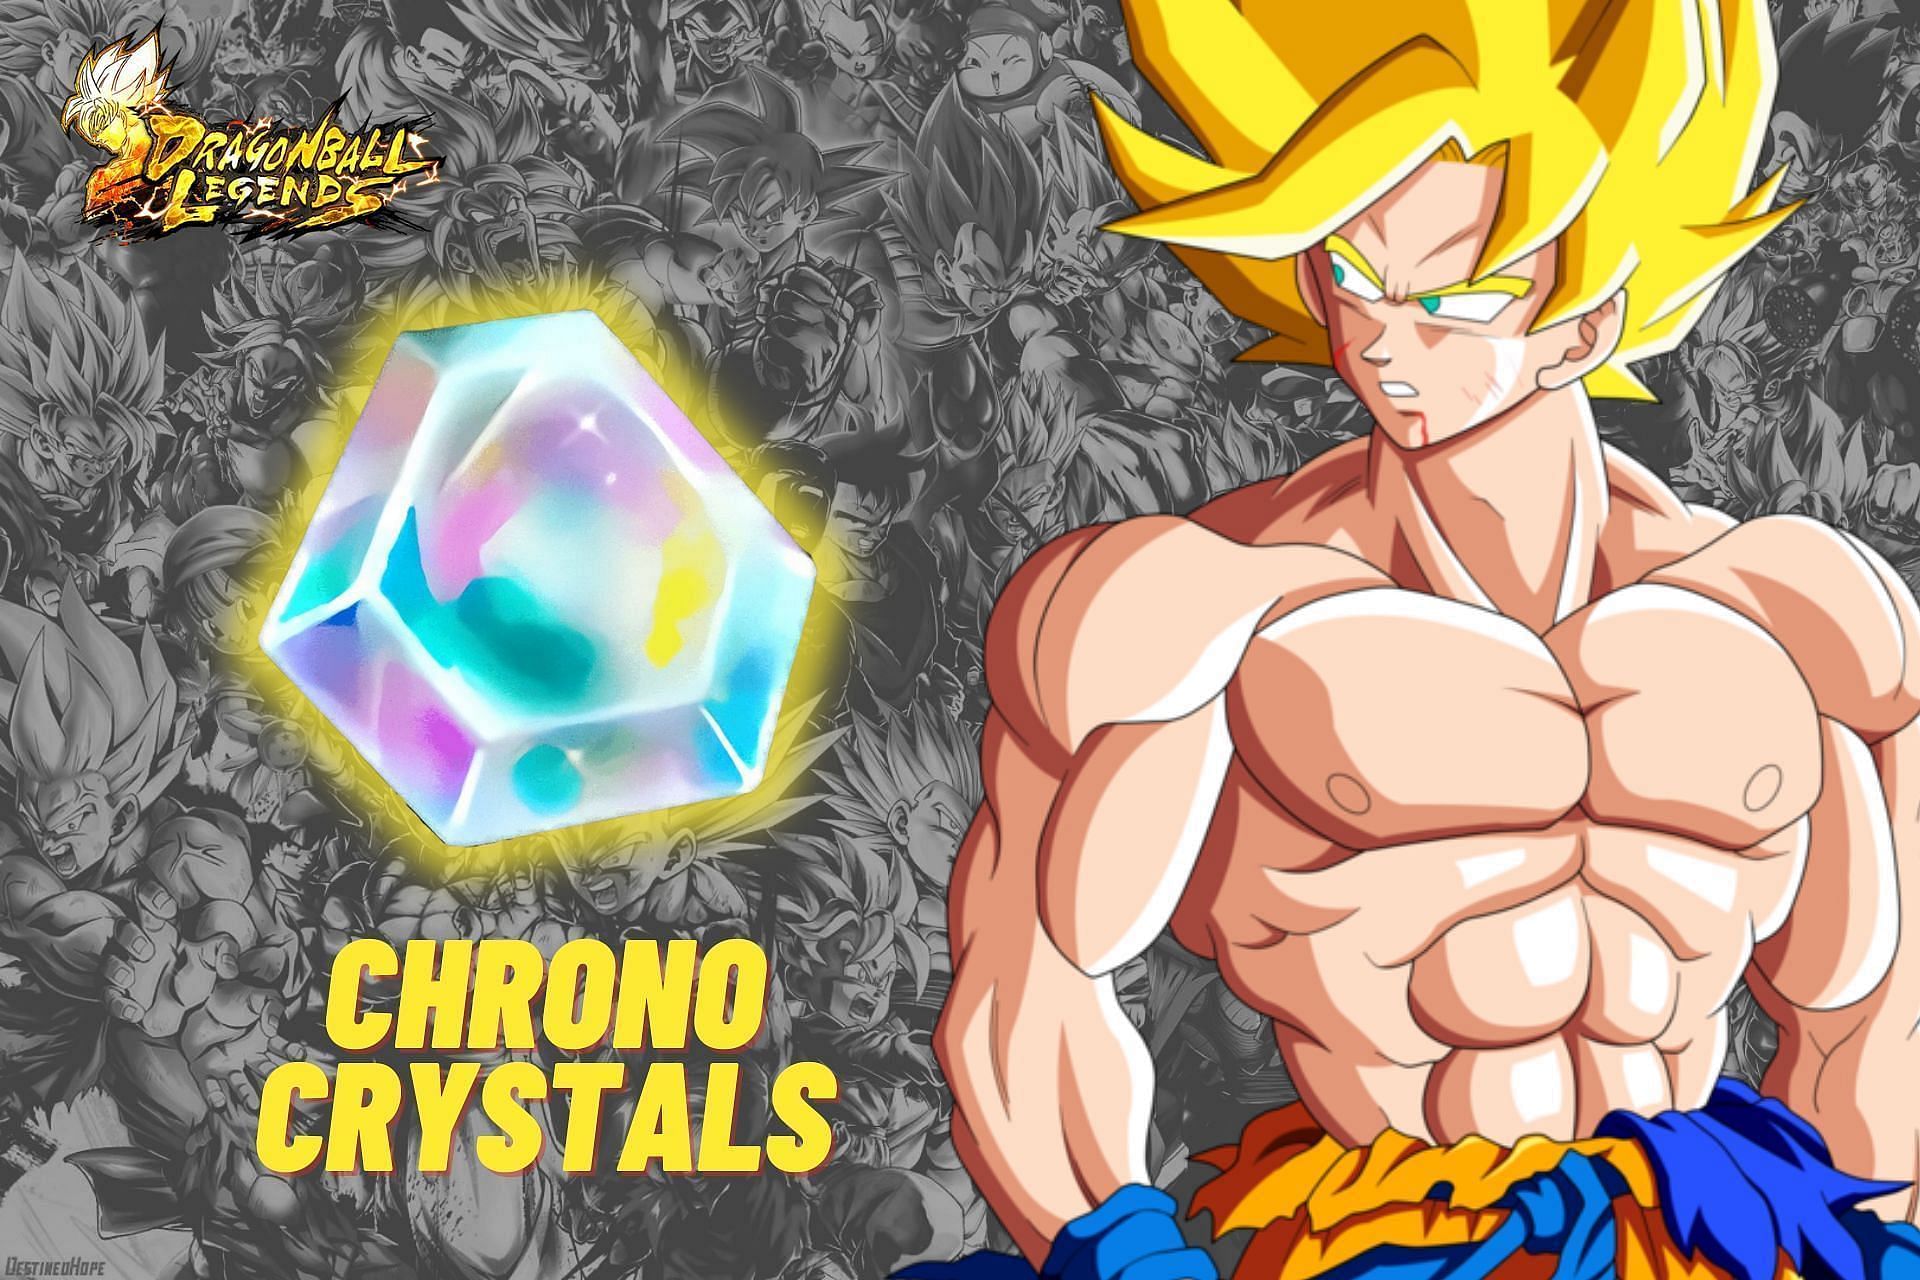 Chrono crystals